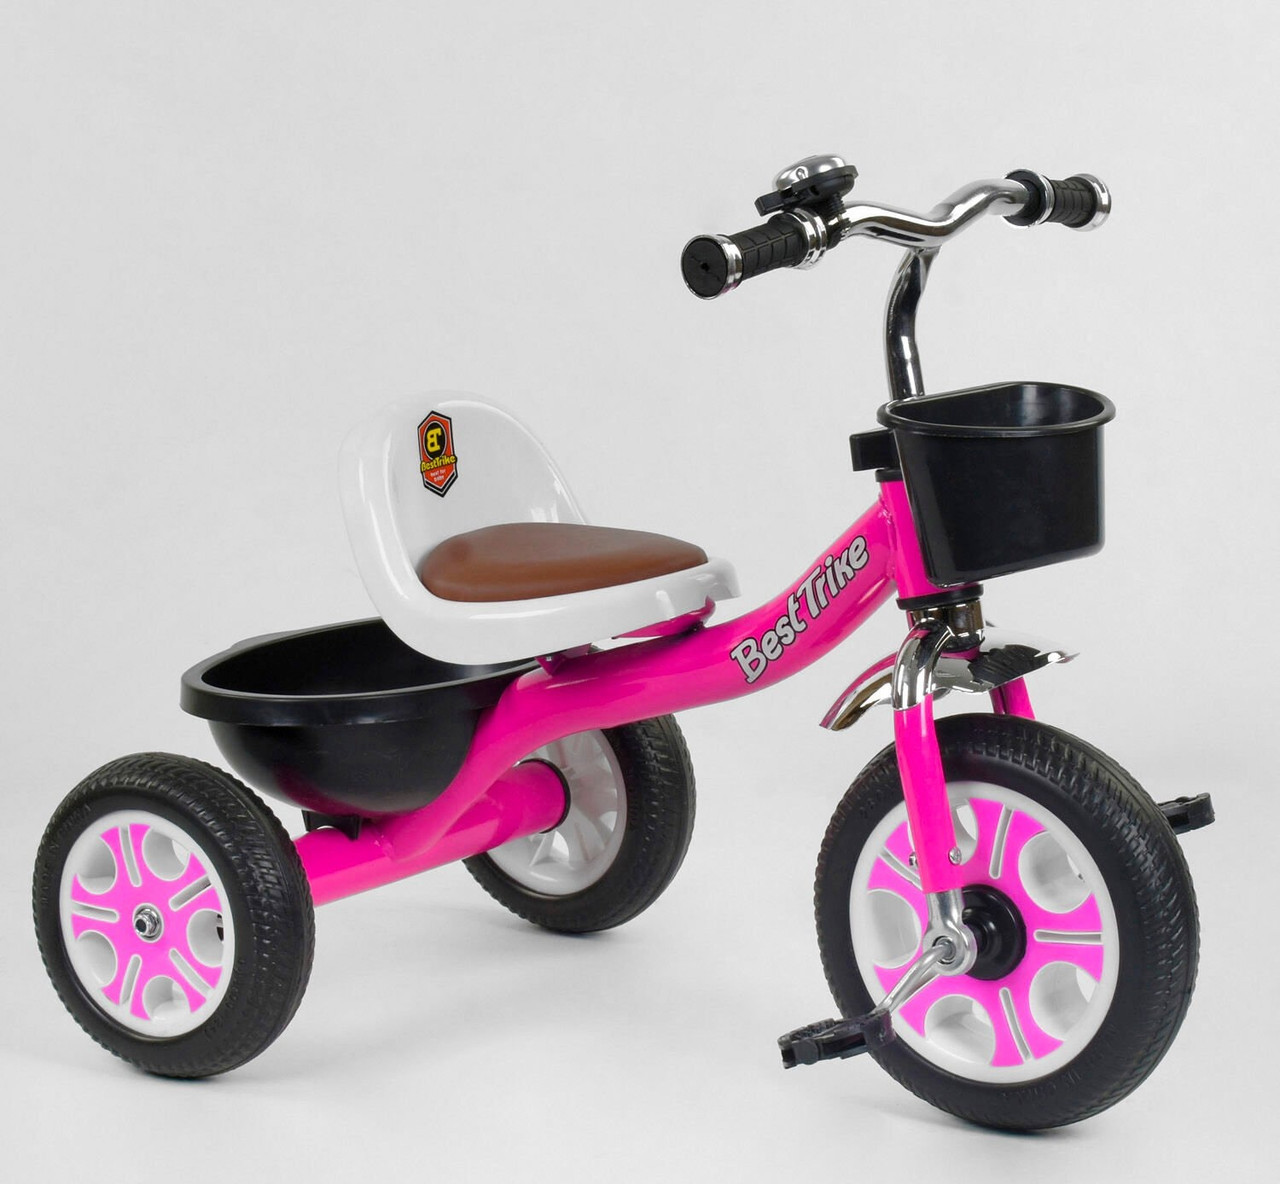 

Велосипед 3-х колёсный LM-2806 "Best Trike" РОЗОВЫЙ, пено колесо, металлическая рама, звоночек, 2 корзины, Фиолетовый